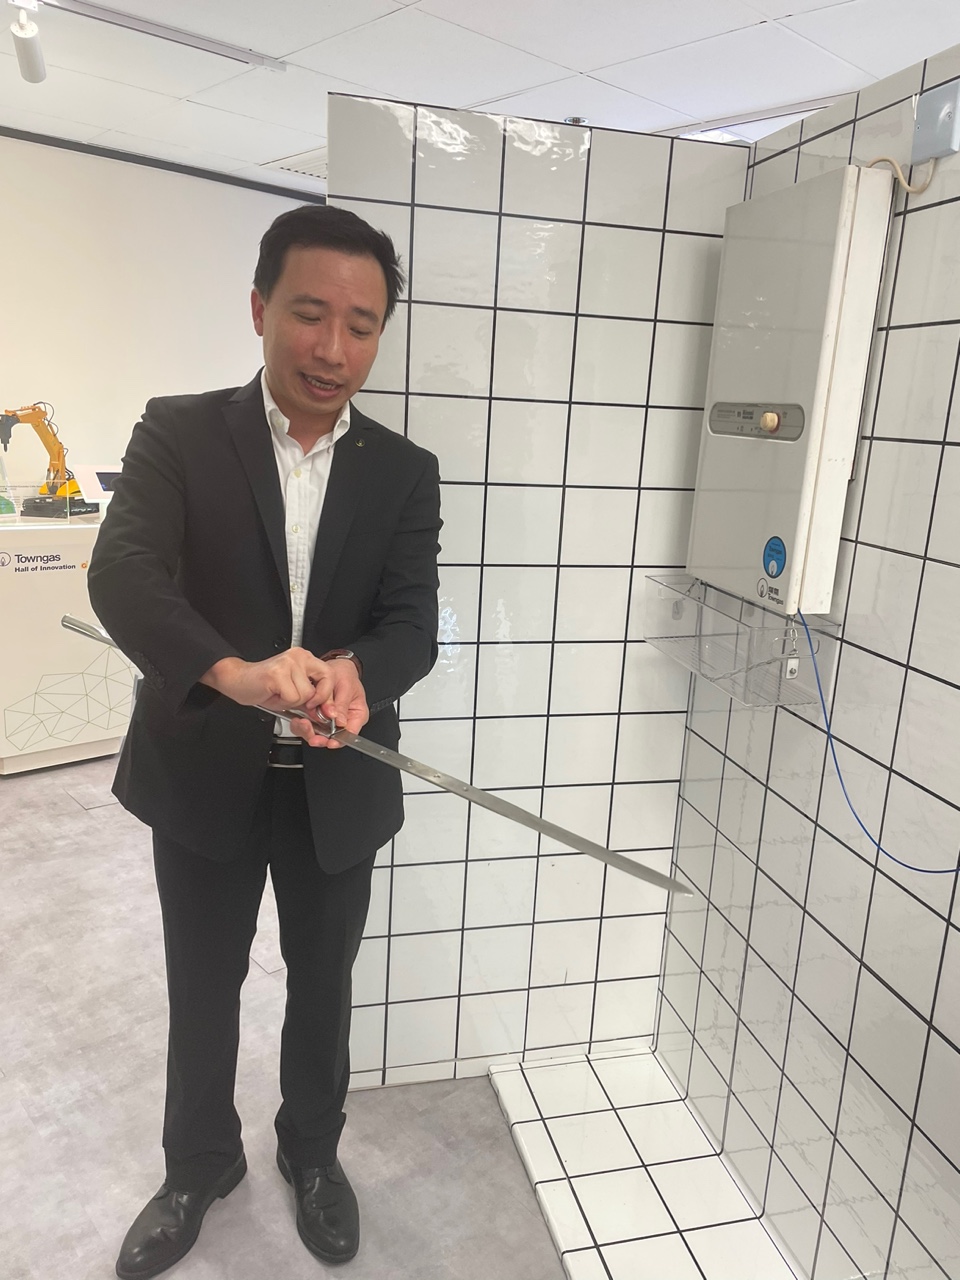 杨培正介绍公司研发的简易玻璃胶去除工具「倚天剑」。蔡思宇摄